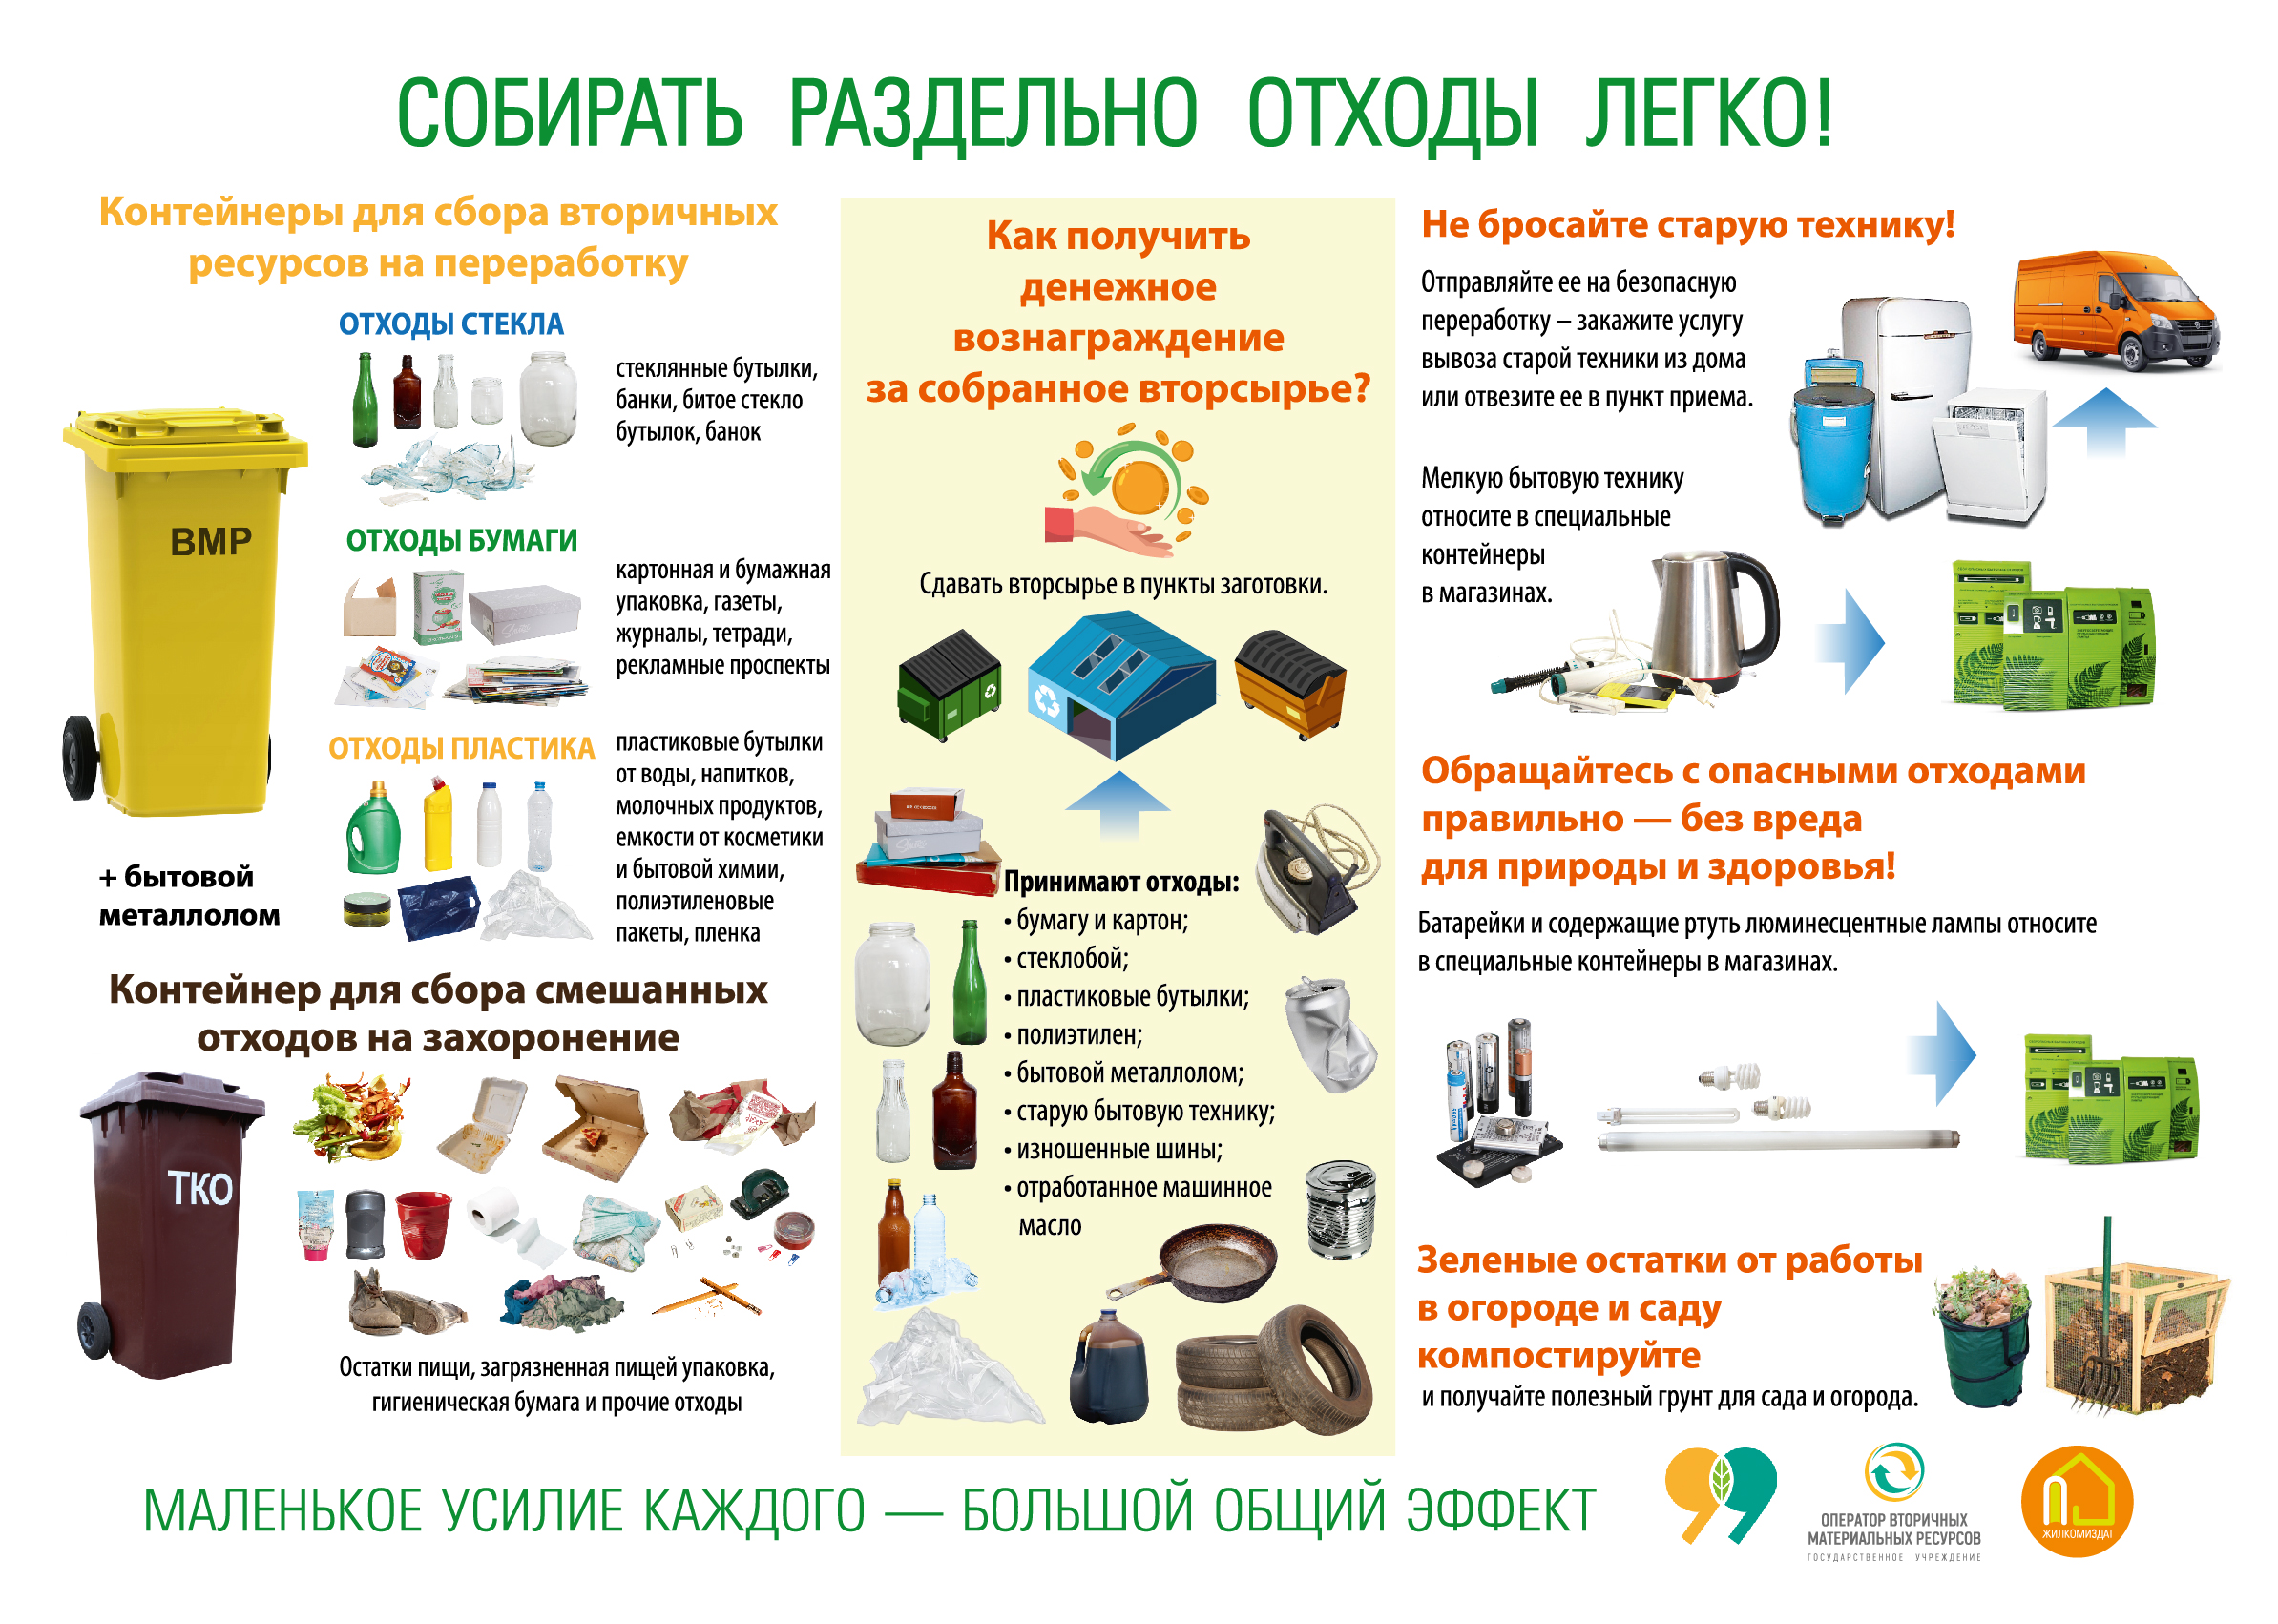 производители пластиковой мебели в россии список